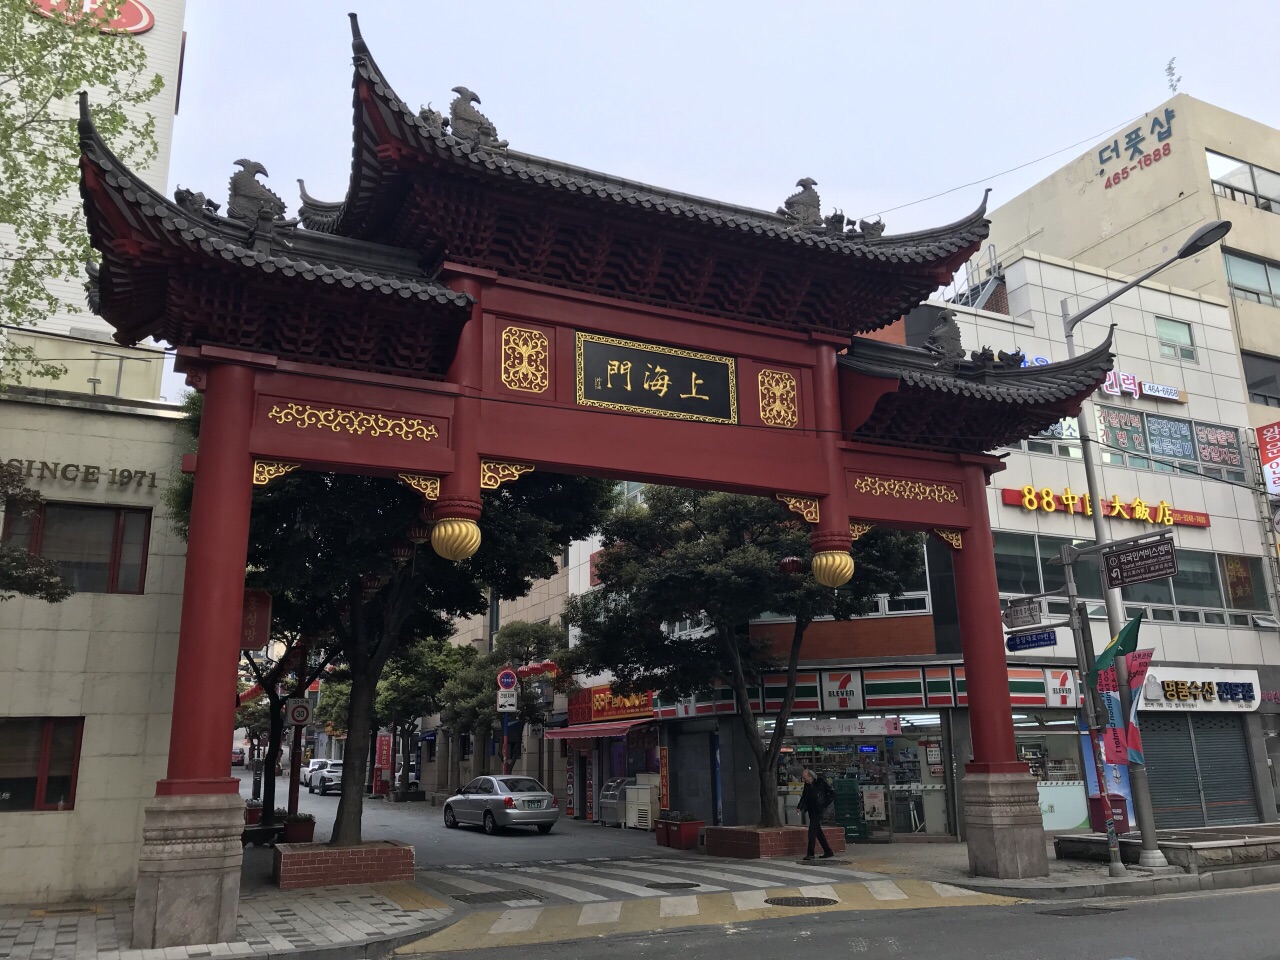 2021上海牌楼和上海街游玩攻略,韩国料理に饱きたら中华料理.